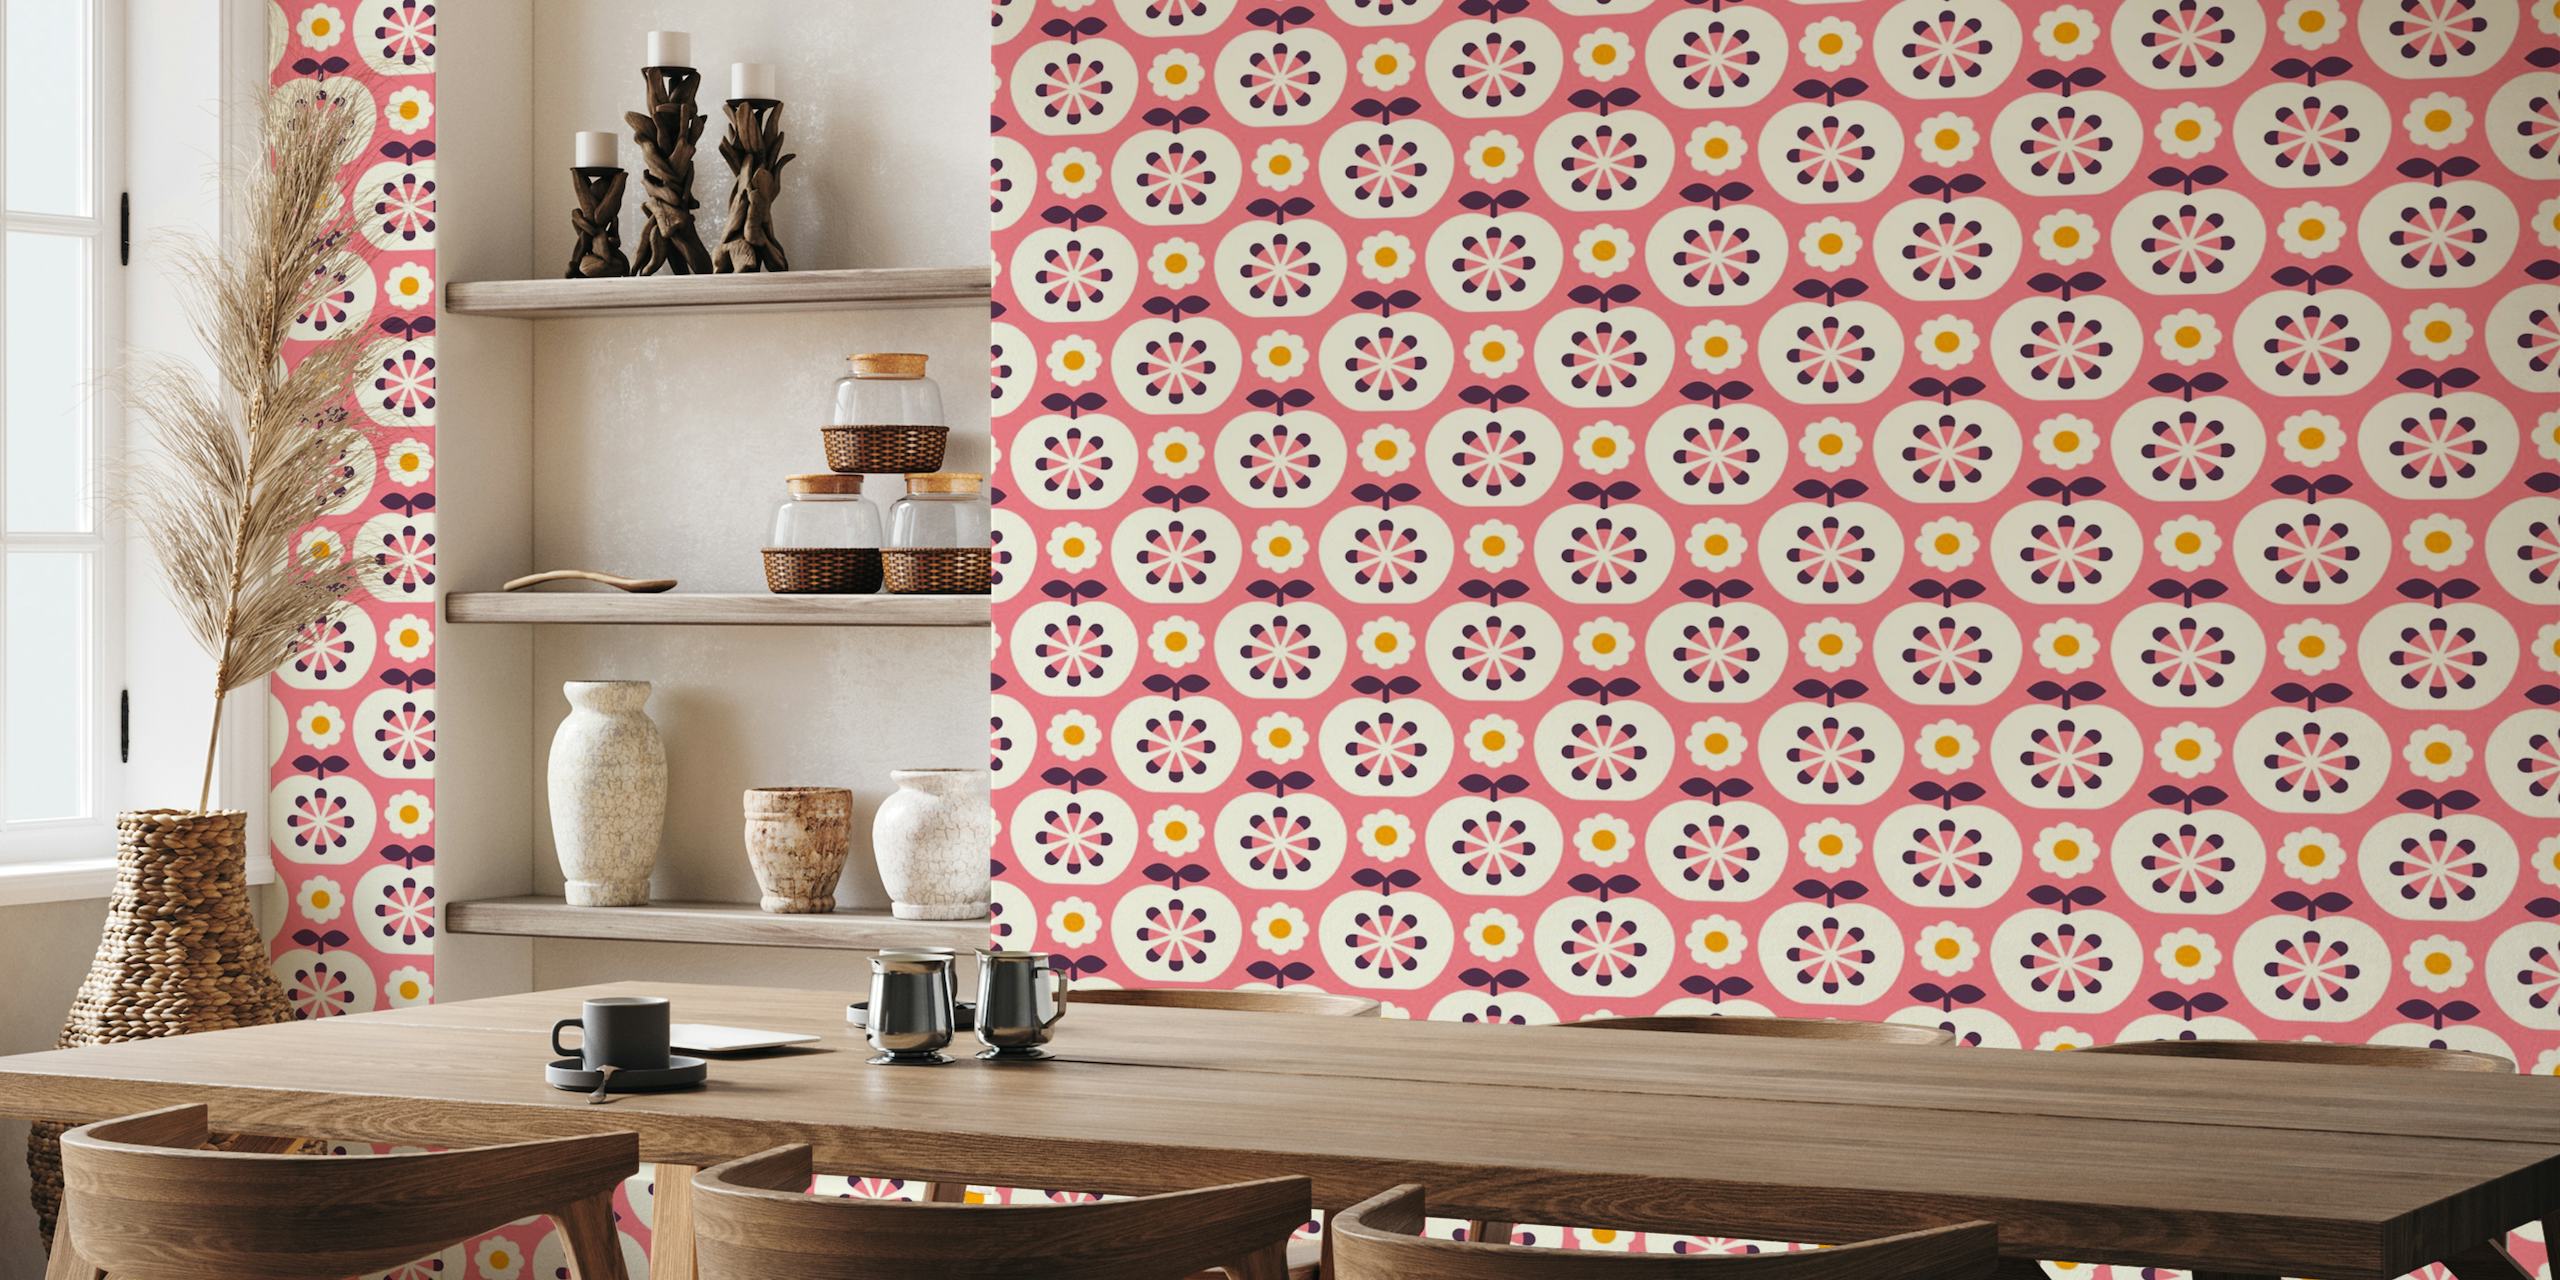 Retro stil äpplen och blommor mönster i rosa för väggmålning